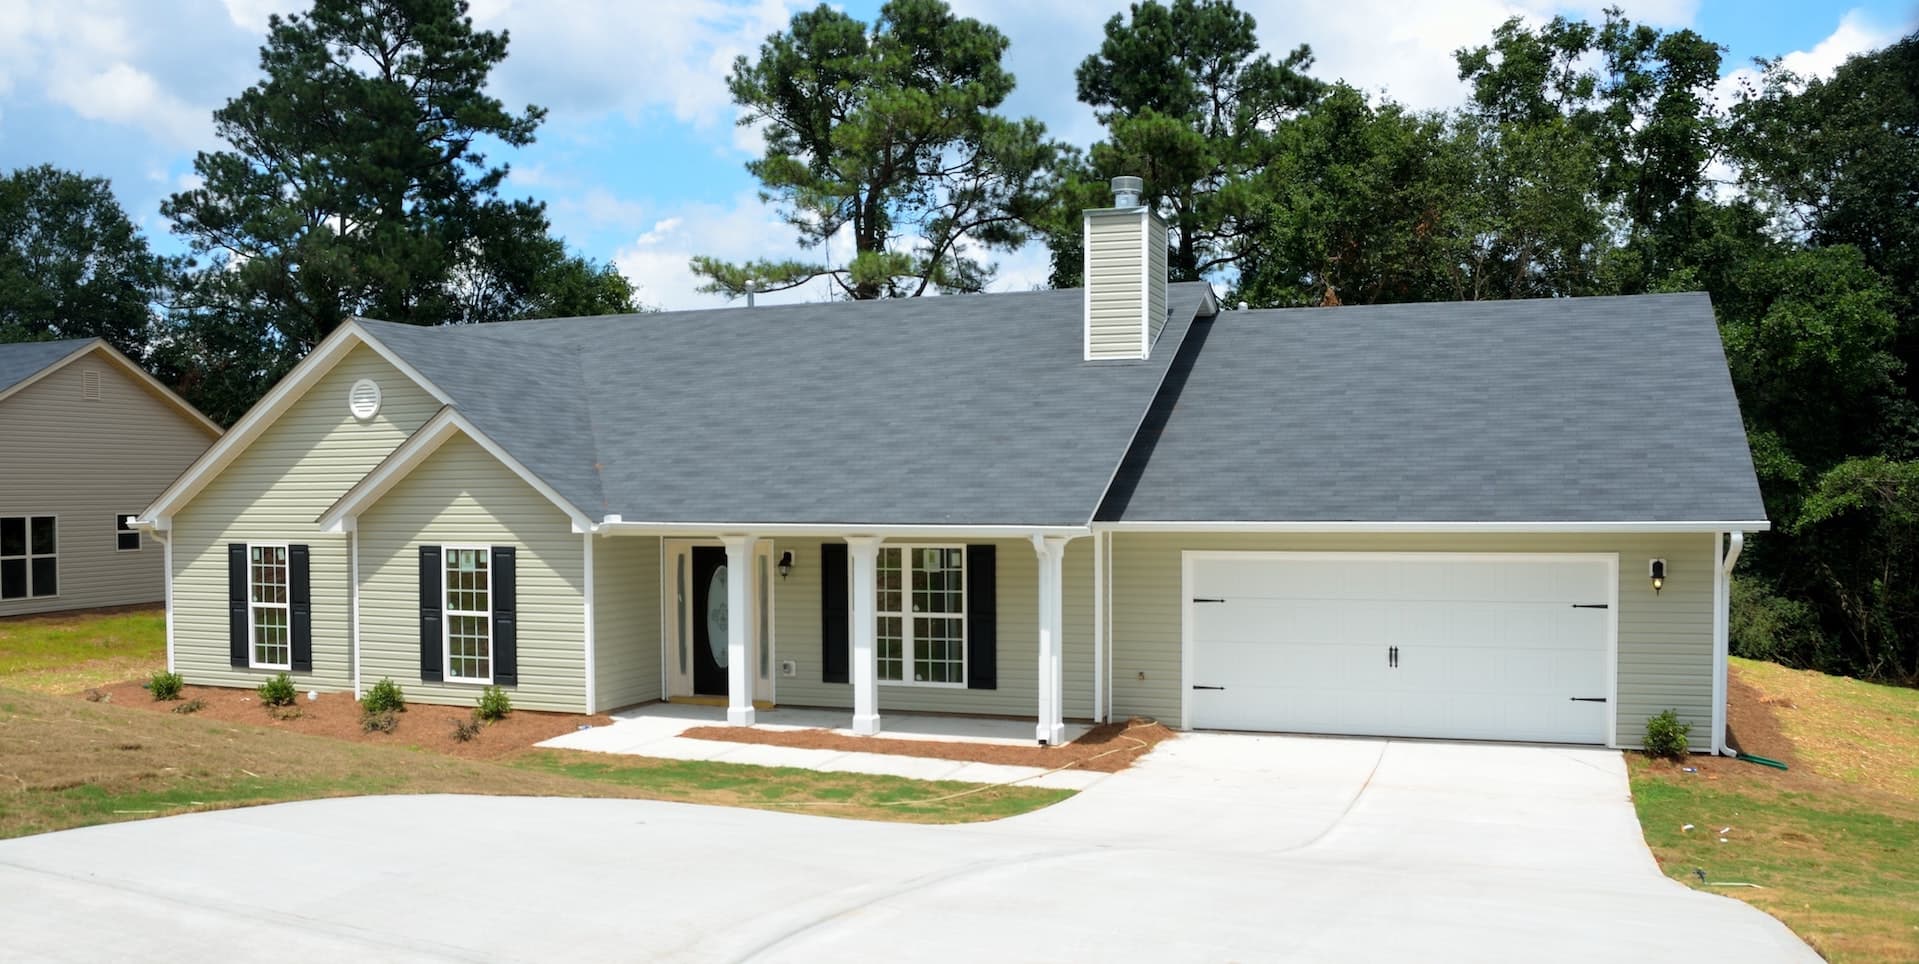 La toiture de votre maison nécessite une inspection régulière afin de détecter d'éventuels problèmes qui pourraient menacer la sécurité de votre maison.